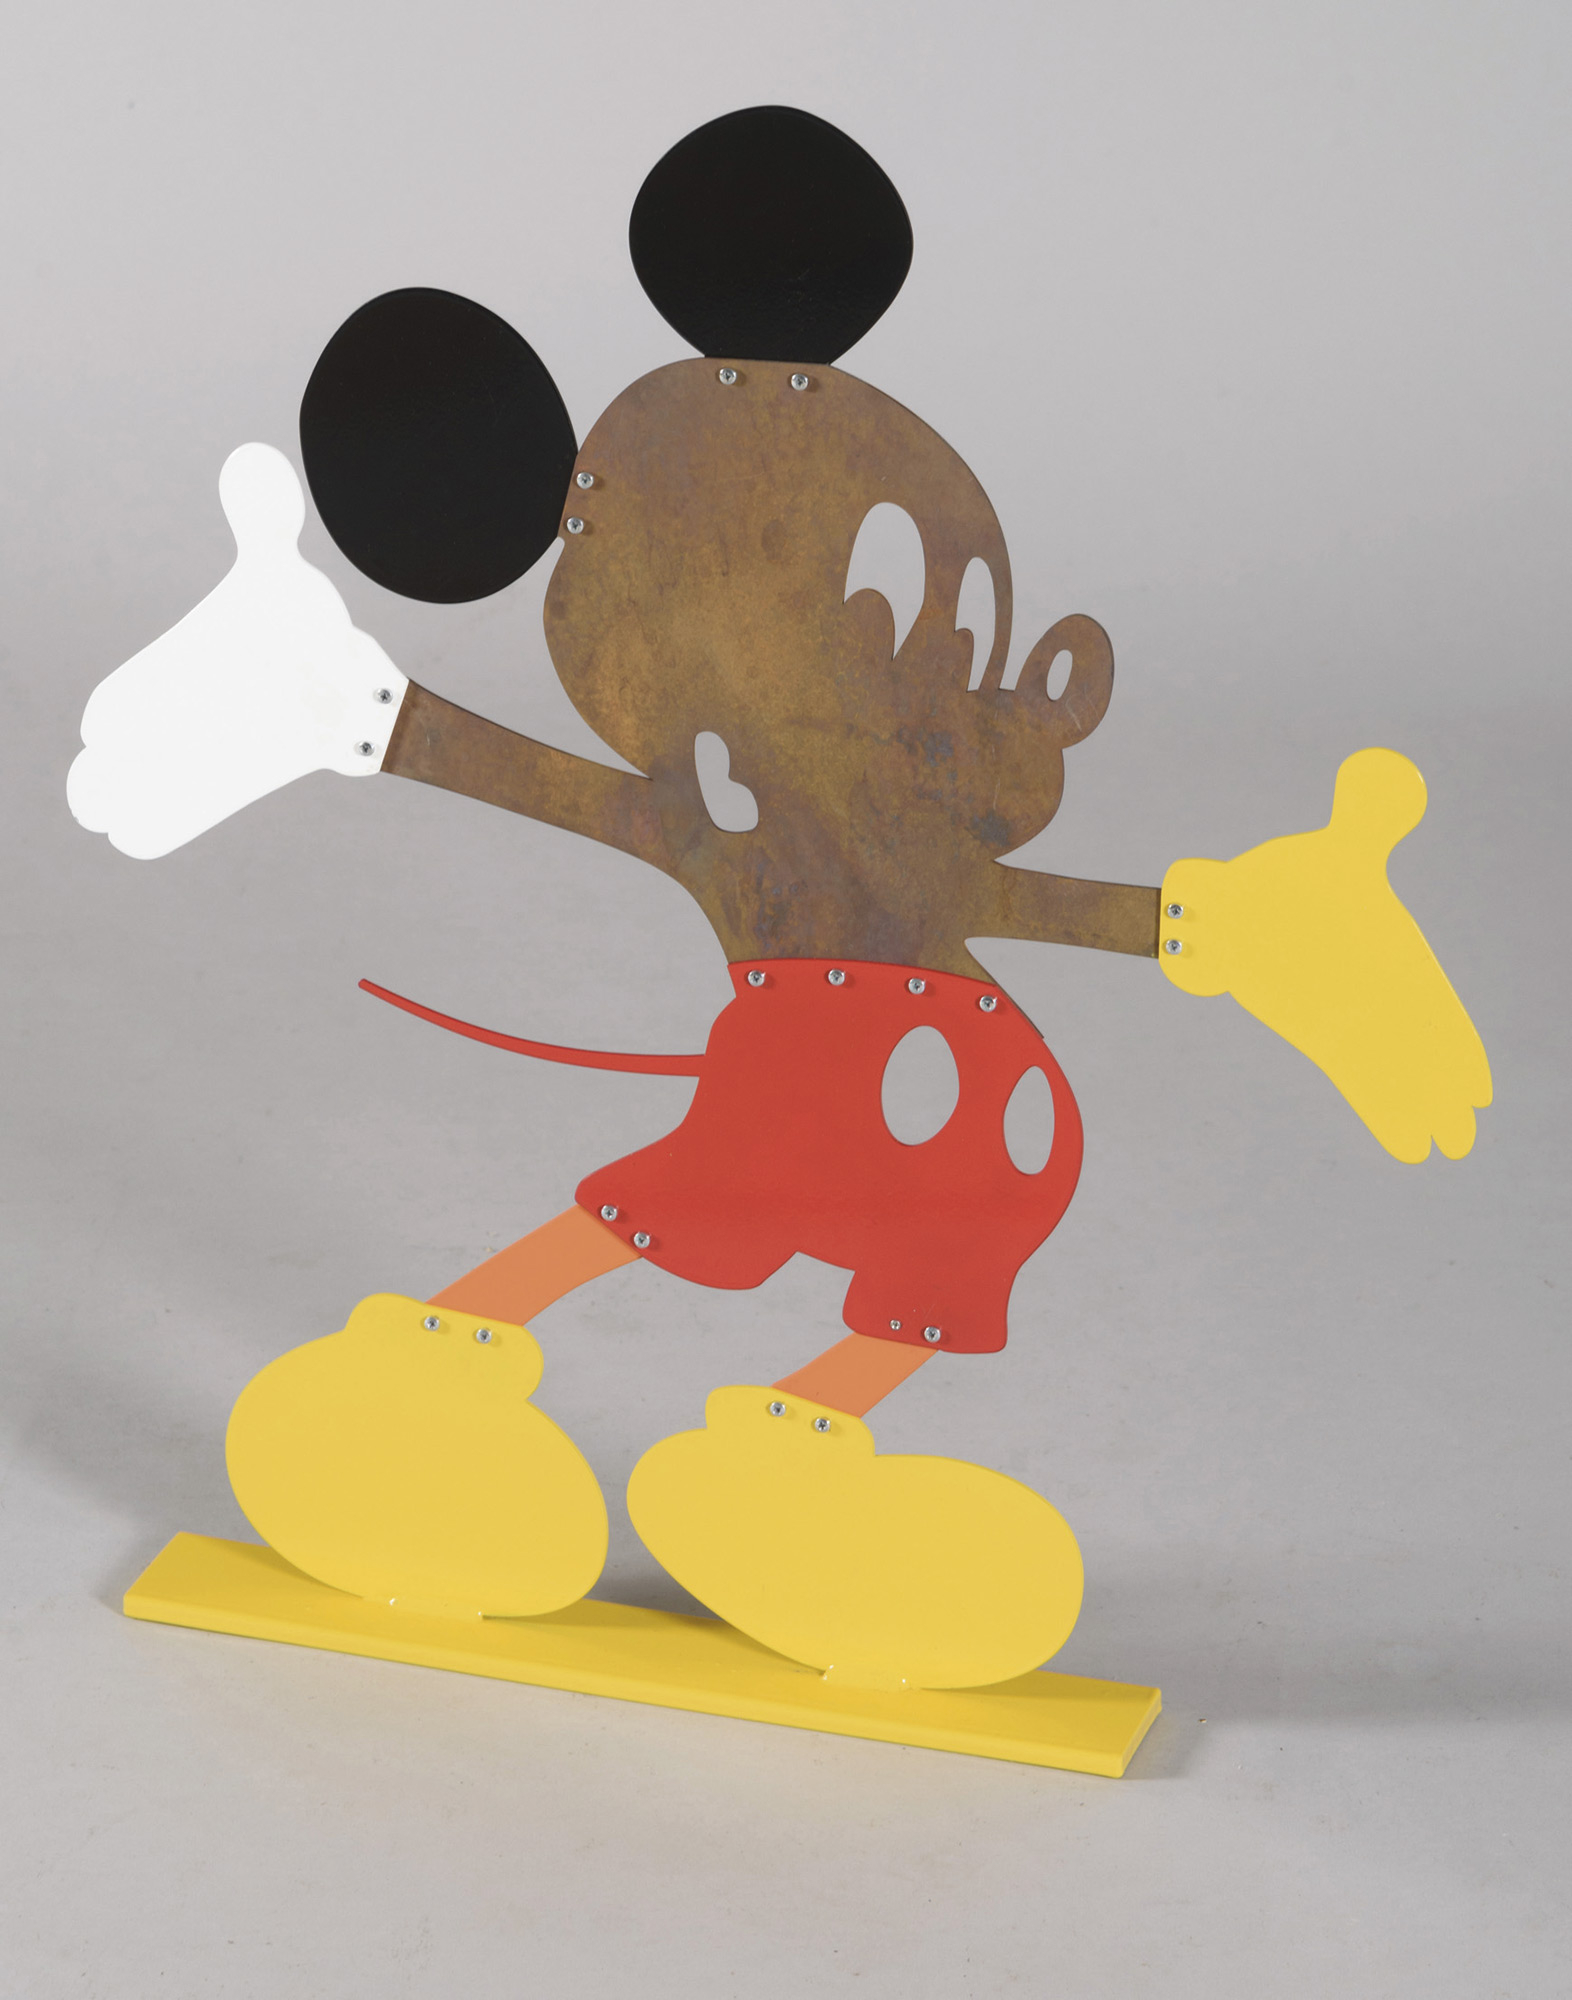 Artist Mouse. Colección escaparate de la vida.